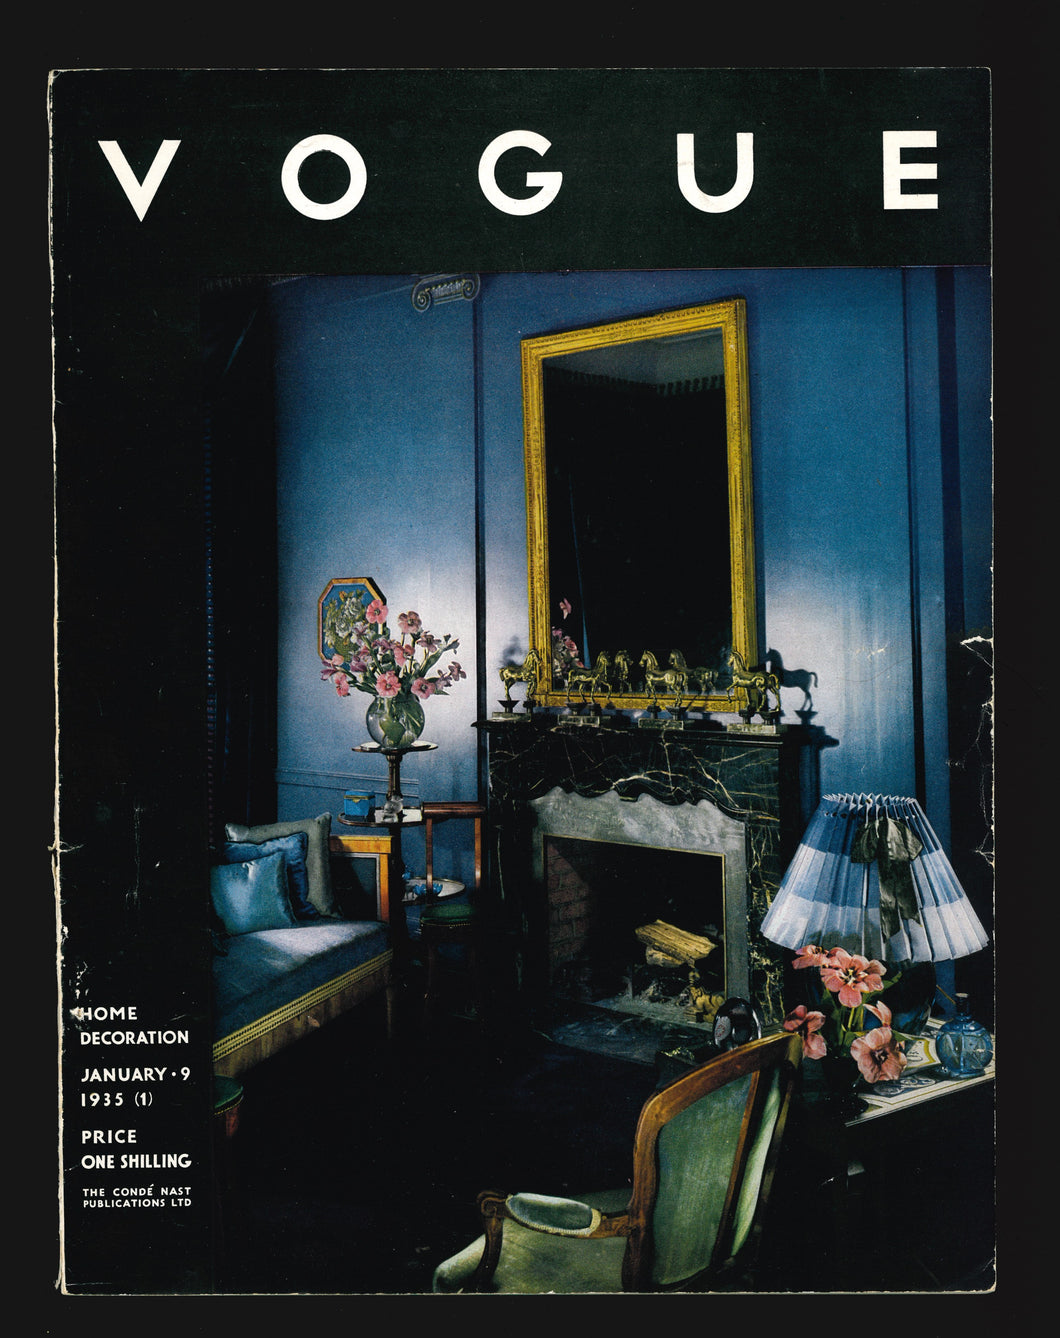 Vogue UK Jan 9 1935